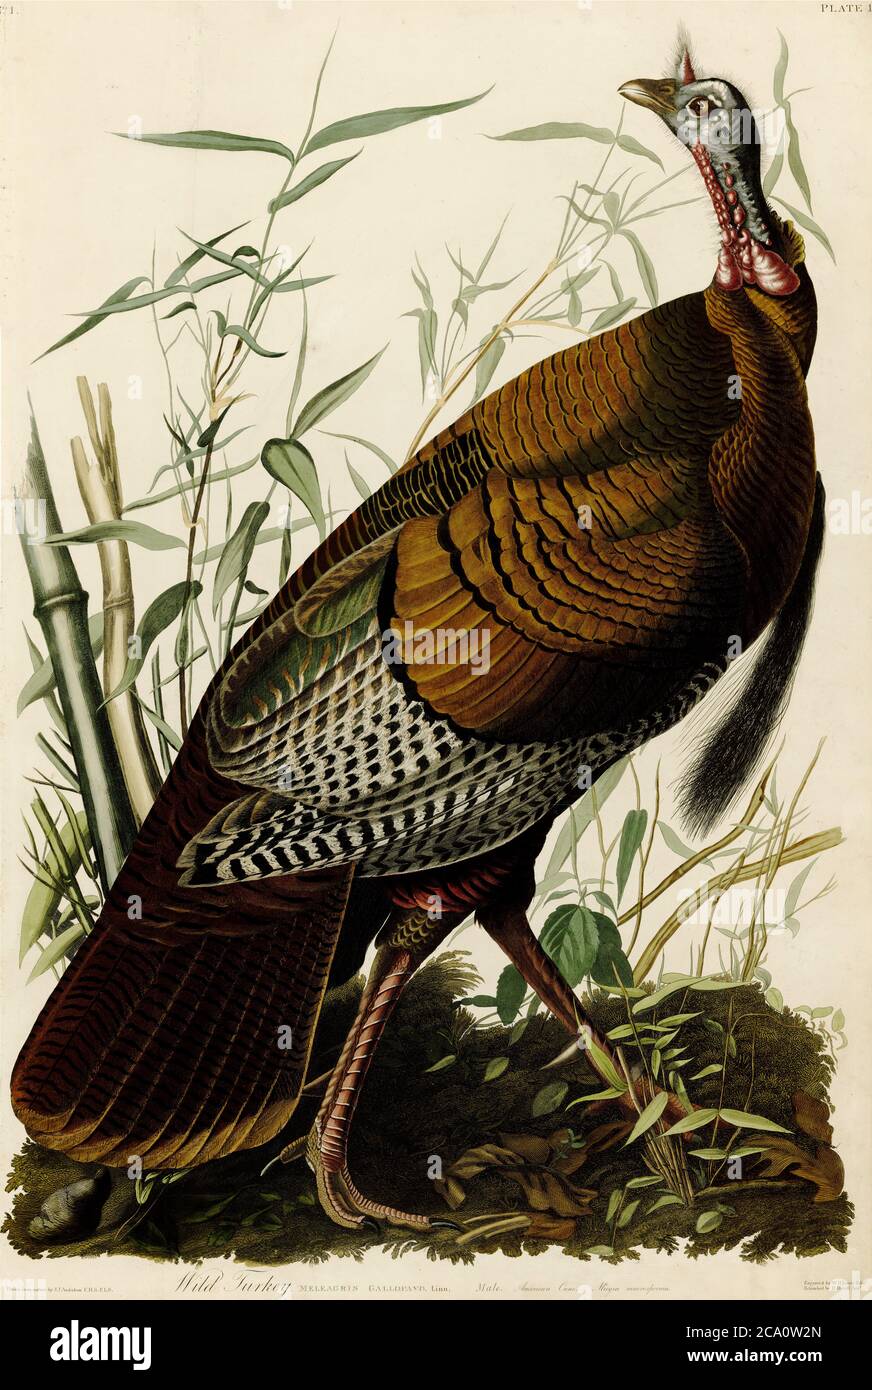 turquía salvaje por John James Audubon, la turquía salvaje (Meleagris gallopavo) es un ave terrestre de tierra alta nativa de Norteamérica Foto de stock